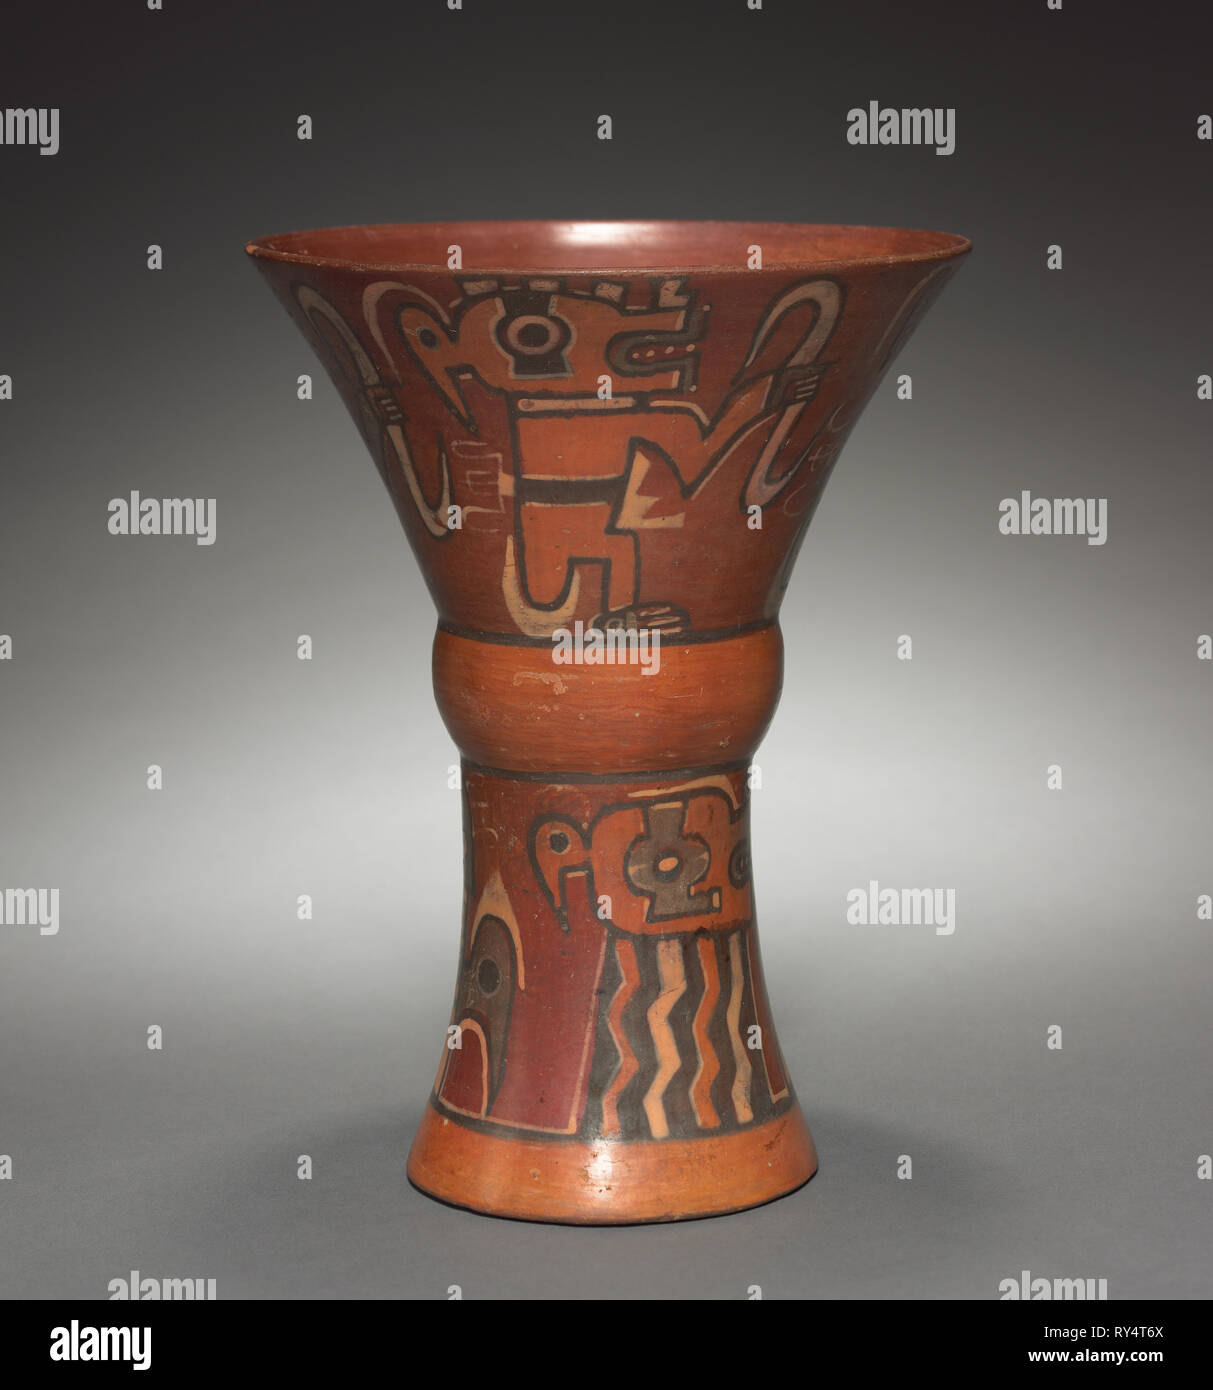 Kero (cintata Cup), 400-1000. Bolivia, Cochabamba(?), stile di Tiwanaku, 400-1000. Coccio con colorato scivola; complessivo: 22.3 x 17 cm (8 3/4 x 6 11/16 in Foto Stock